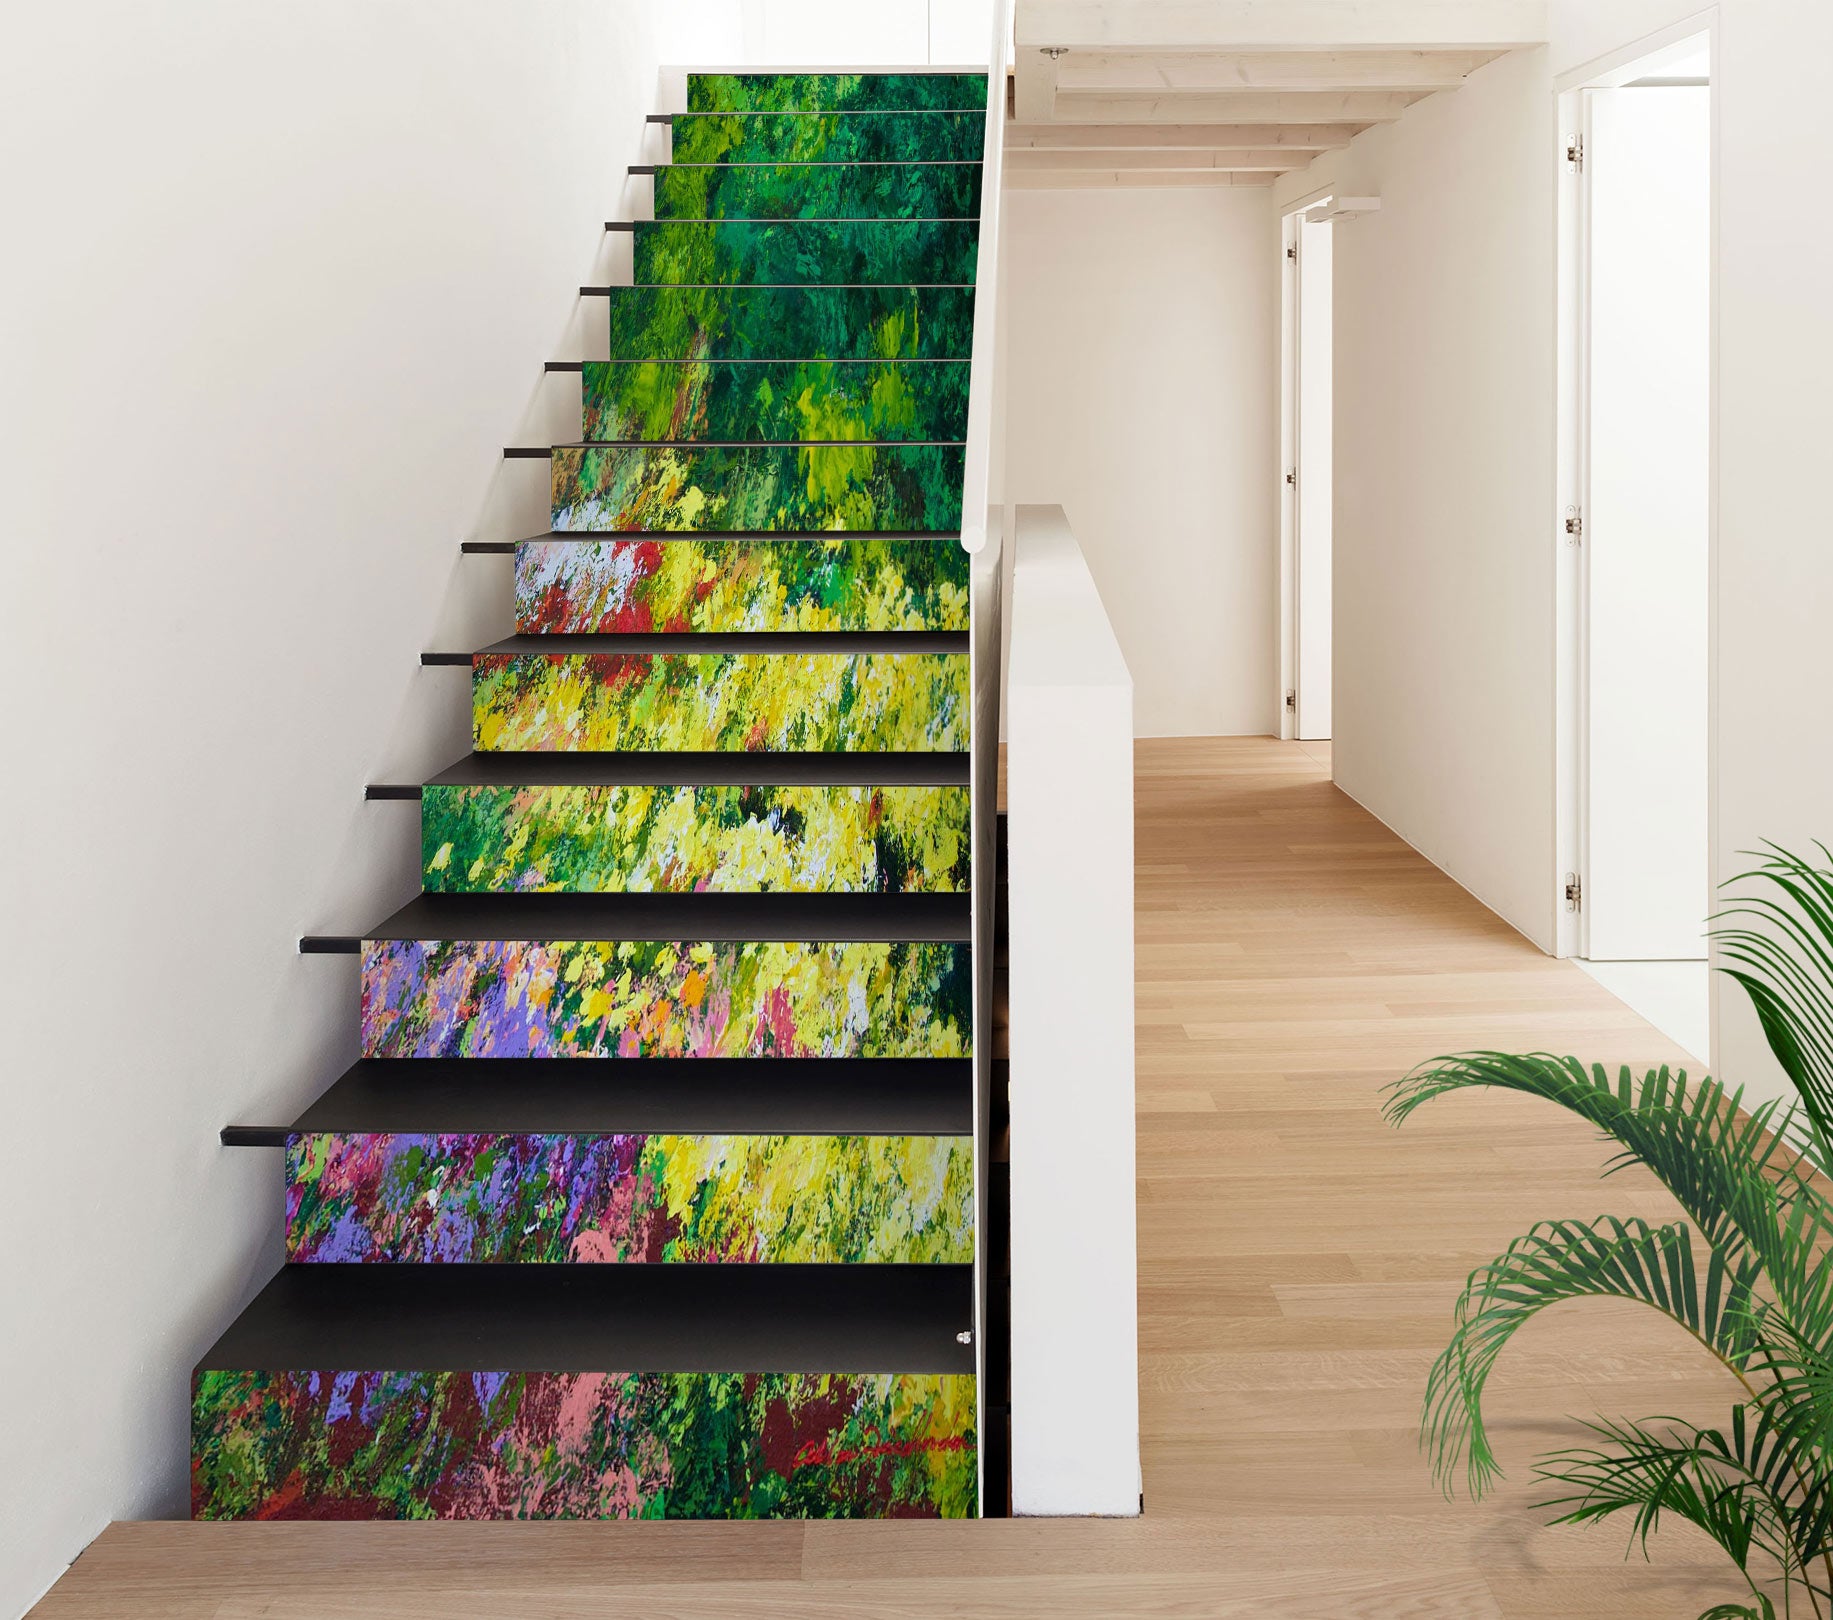 3D Grass Flower Bush 9016 Allan P. Friedlander Stair Risers